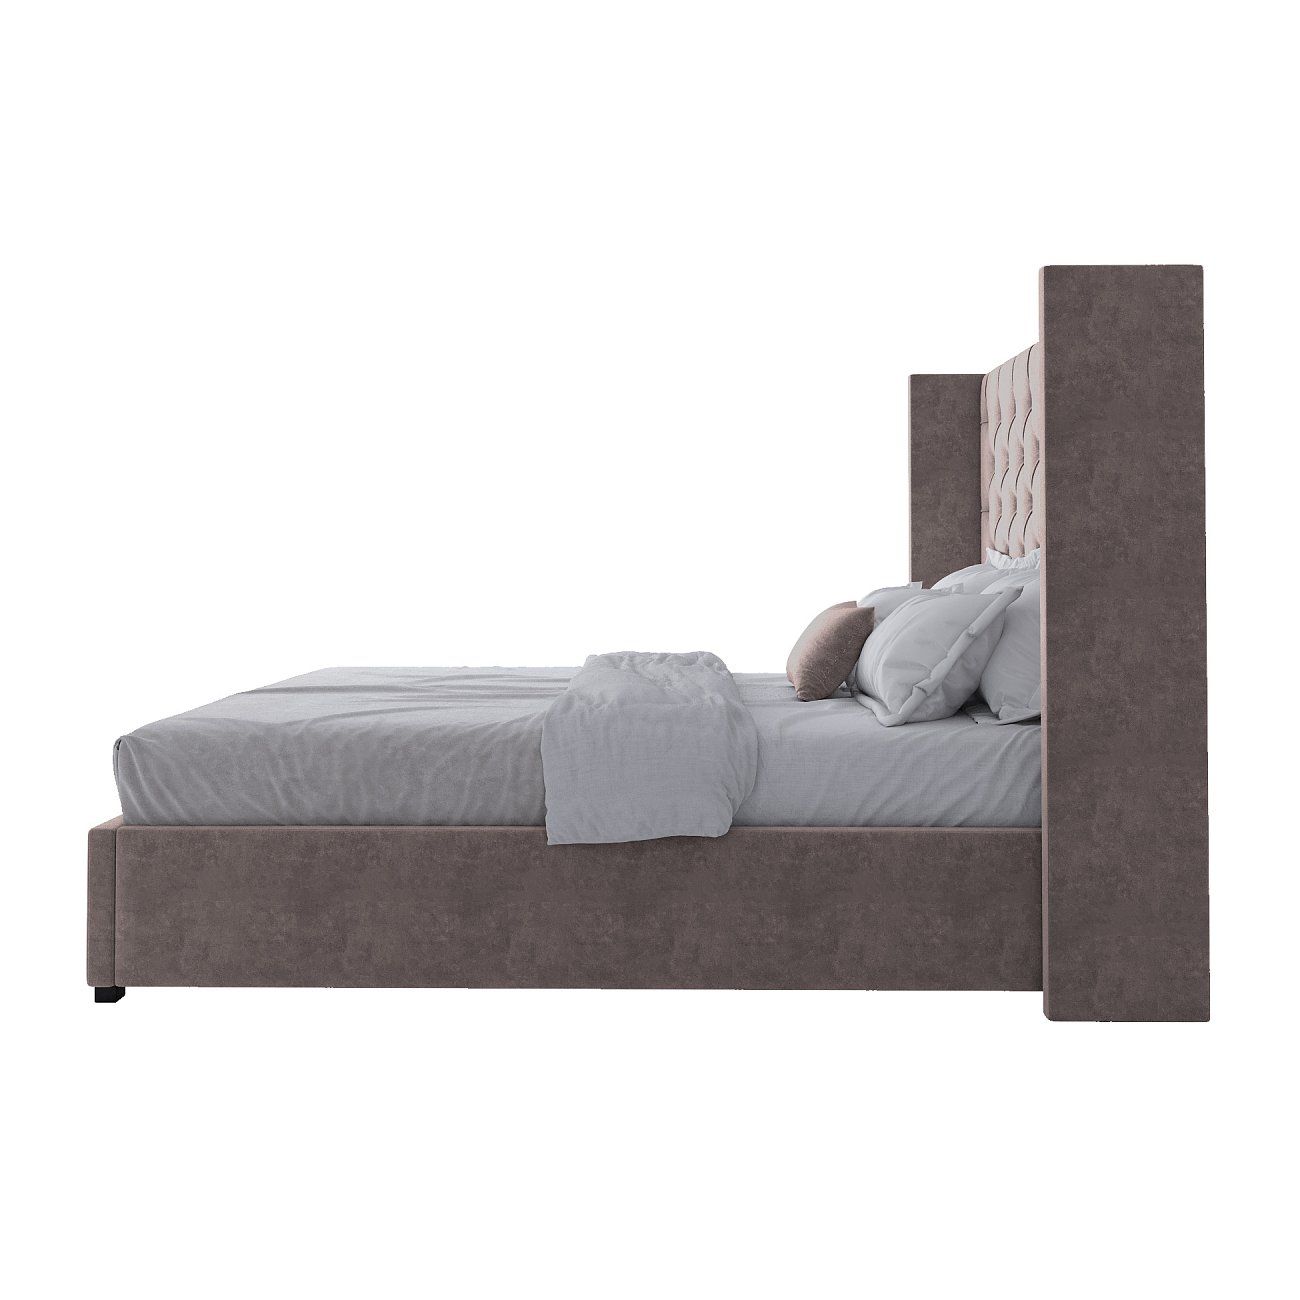 Кровать двуспальная 160х200 см серо-коричневая из велюра с каретной стяжкой без гвоздиков Wing-2